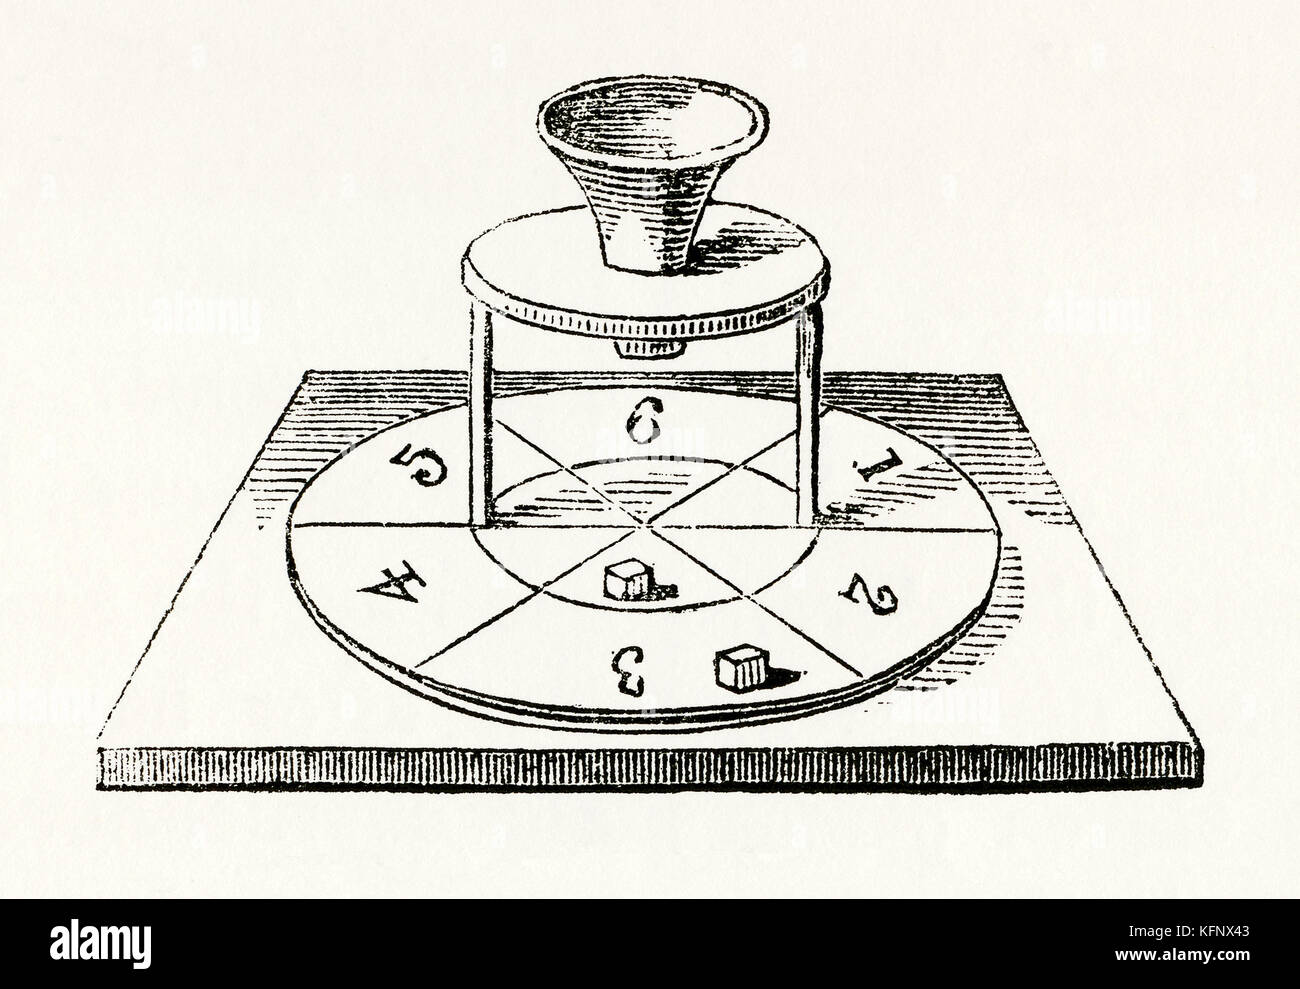 Un'antica incisione medievale di un gioco di lancio dei dadi. È dotato di un dispositivo a imbuto meccanico (o scatola dei dadi) in cui i dadi sono stati messi sopra una tavola di legno Foto Stock